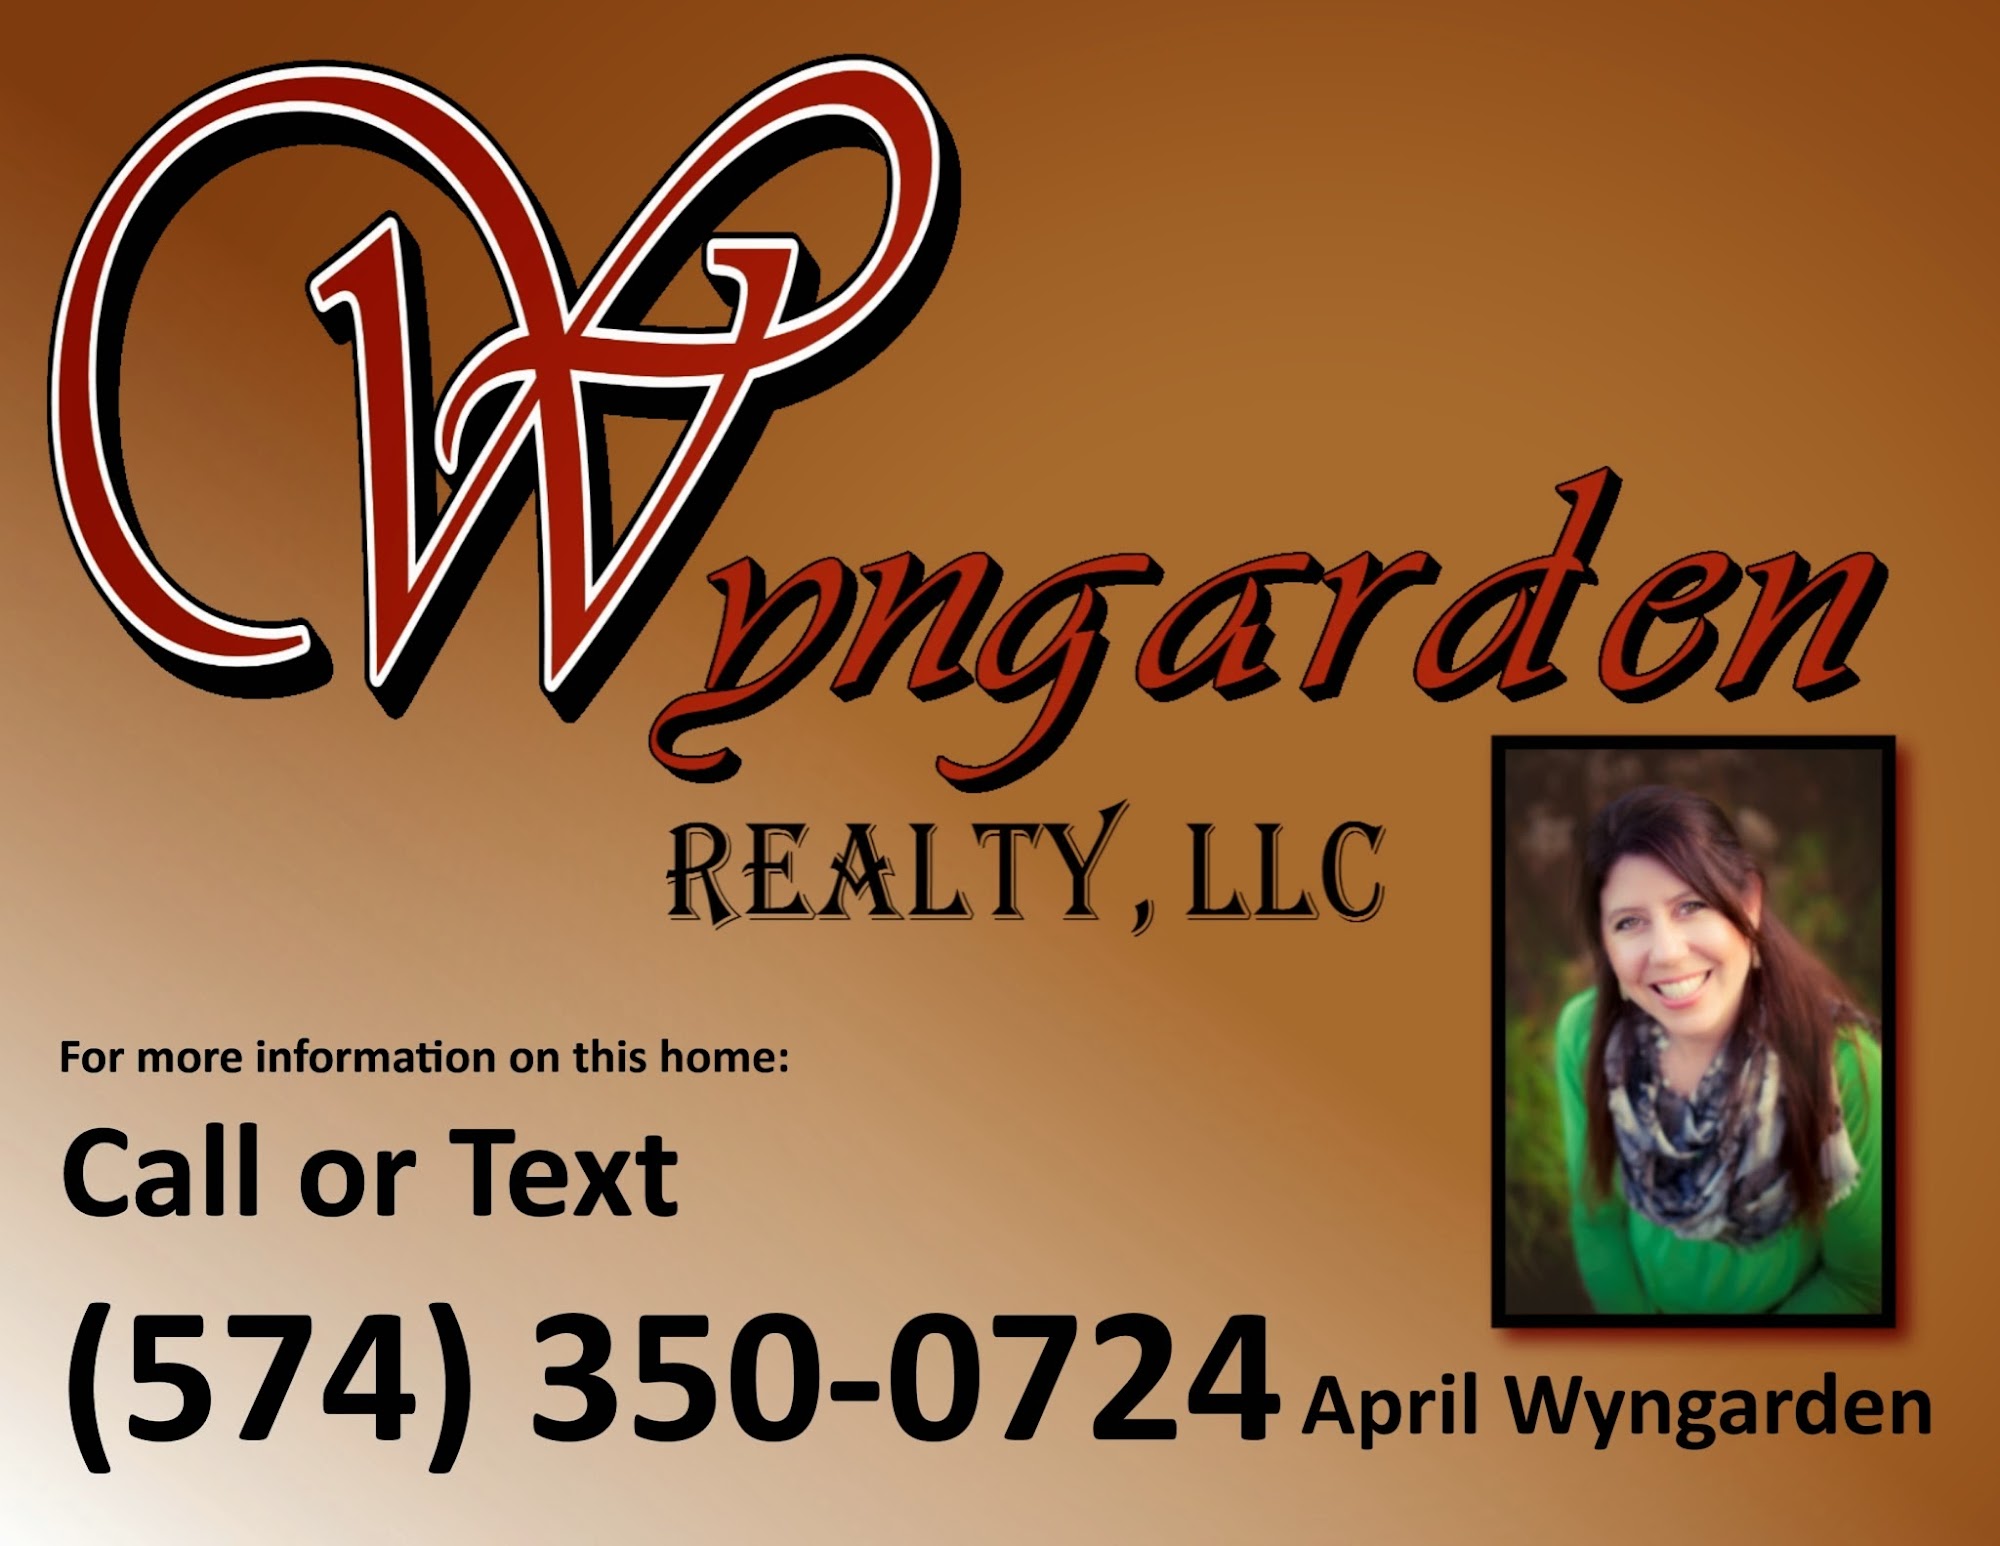 Wyngarden Realty, LLC